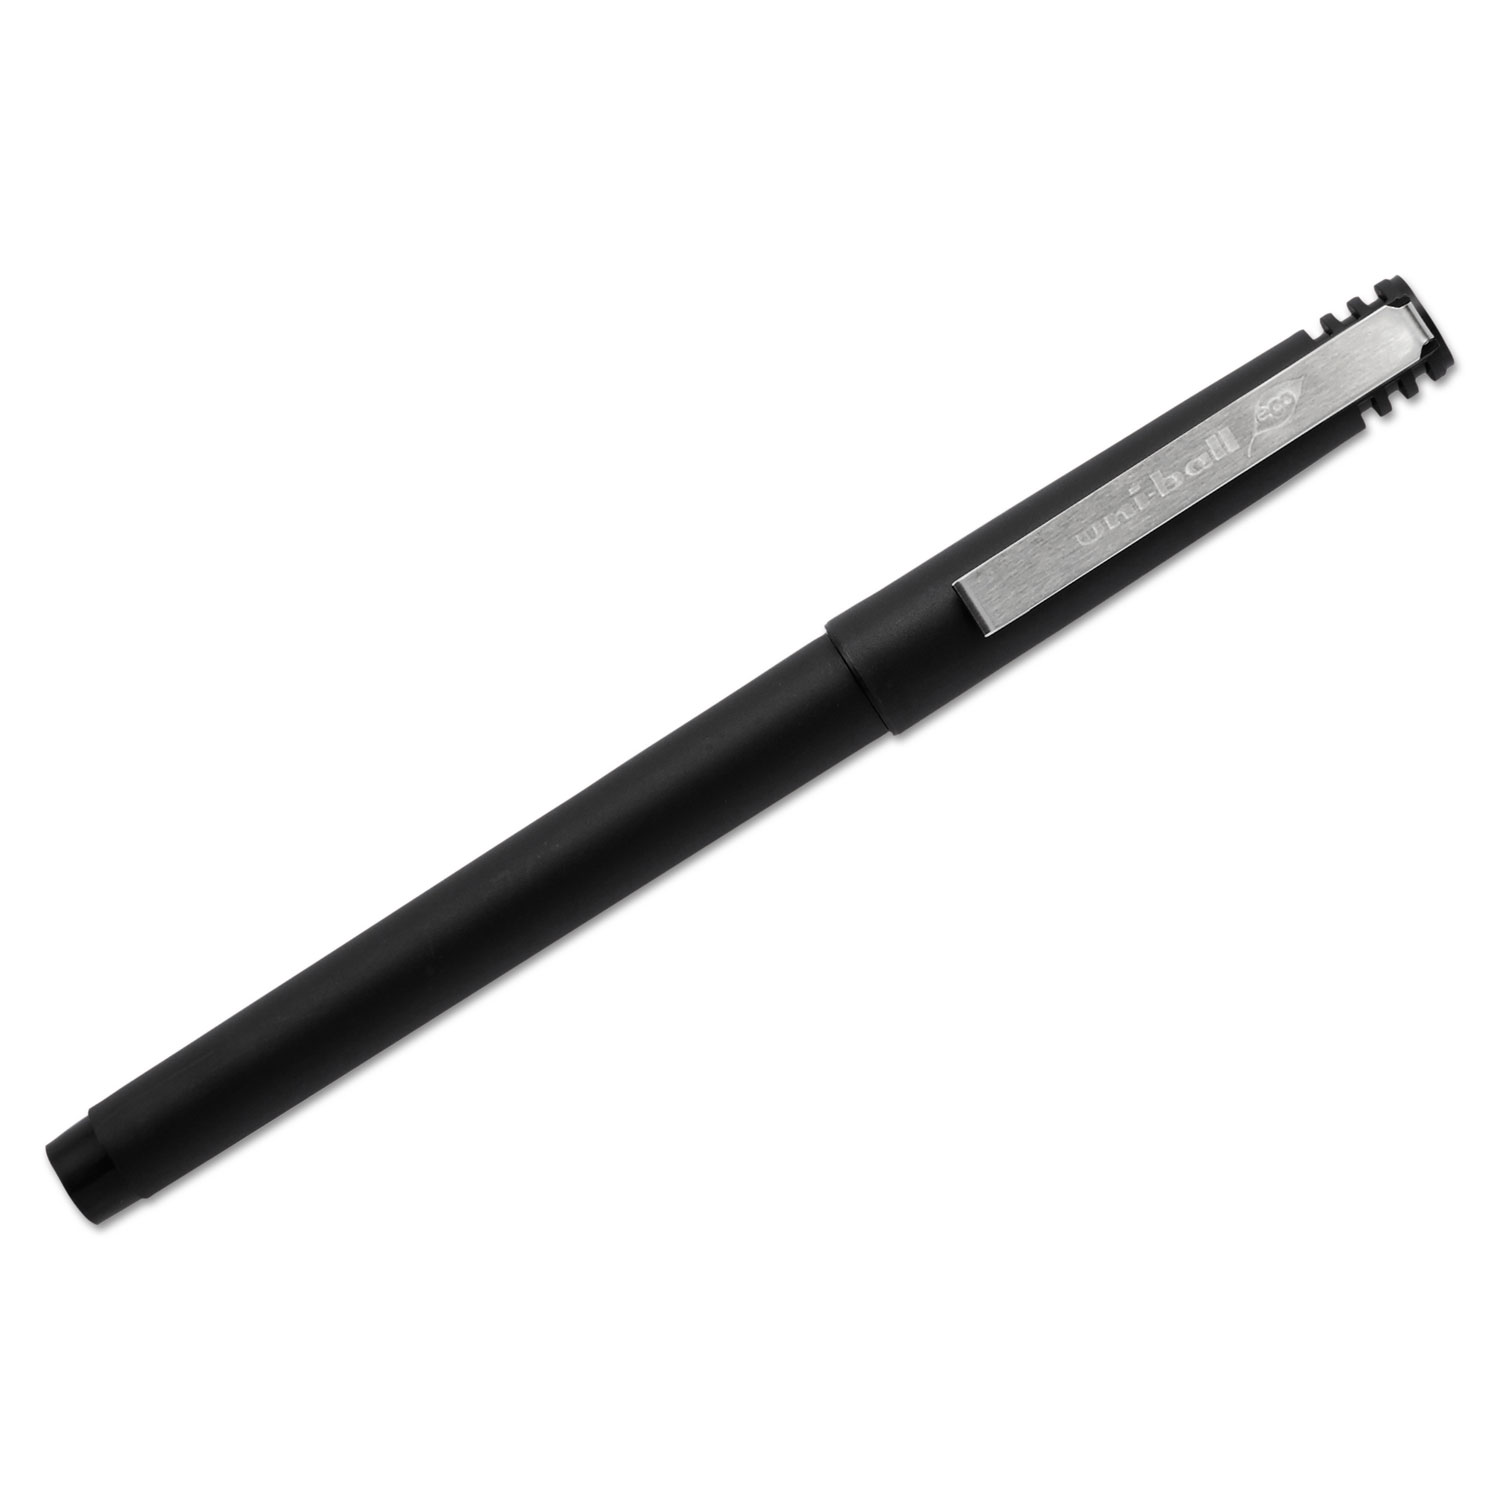 Roller Ball Stick Dye-Based Pen Black Ink, Fine, Dozen